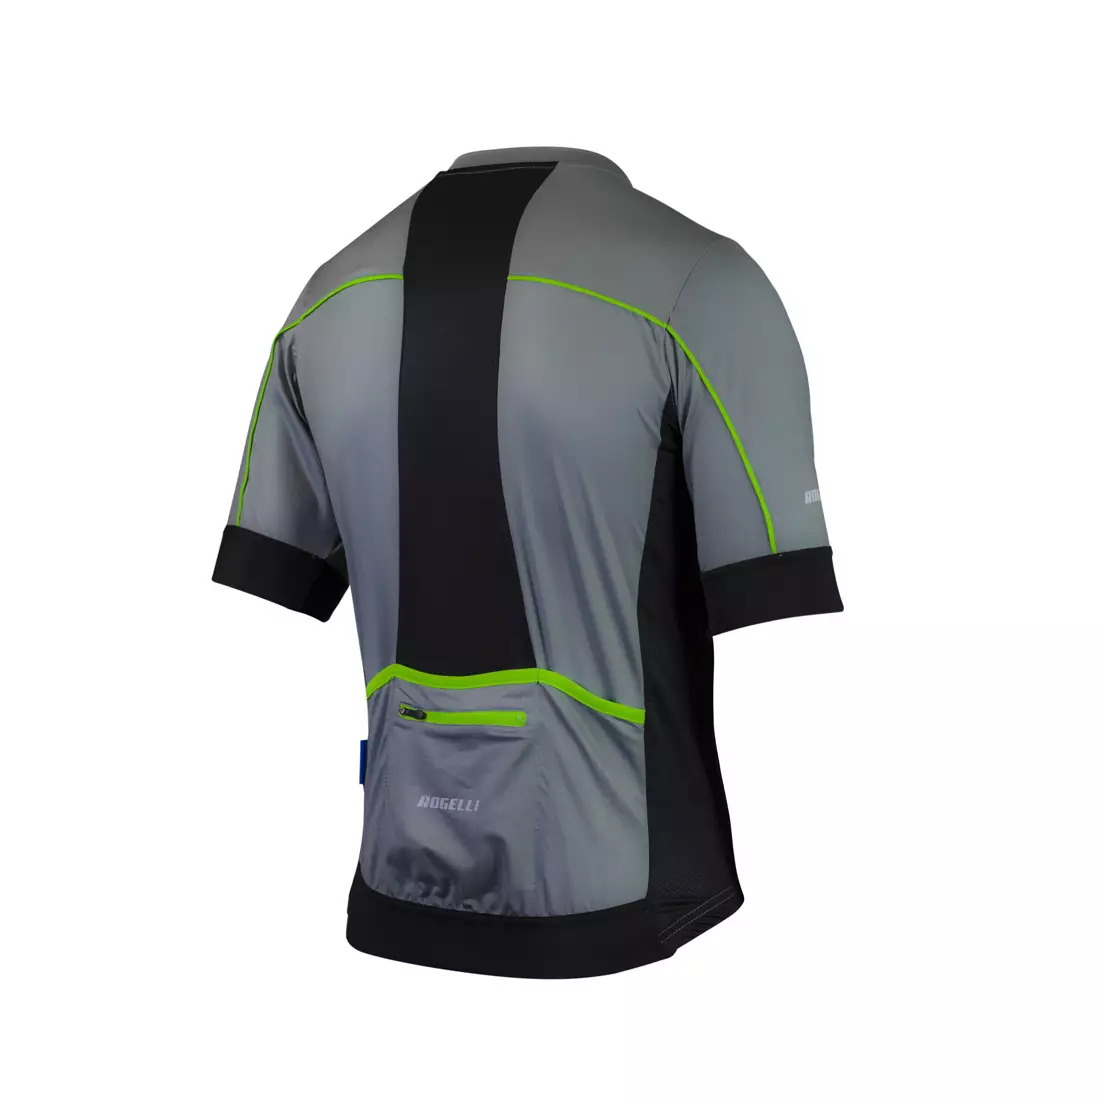 ROGELLI PASSO tricou de ciclism bărbătesc, gri și verde